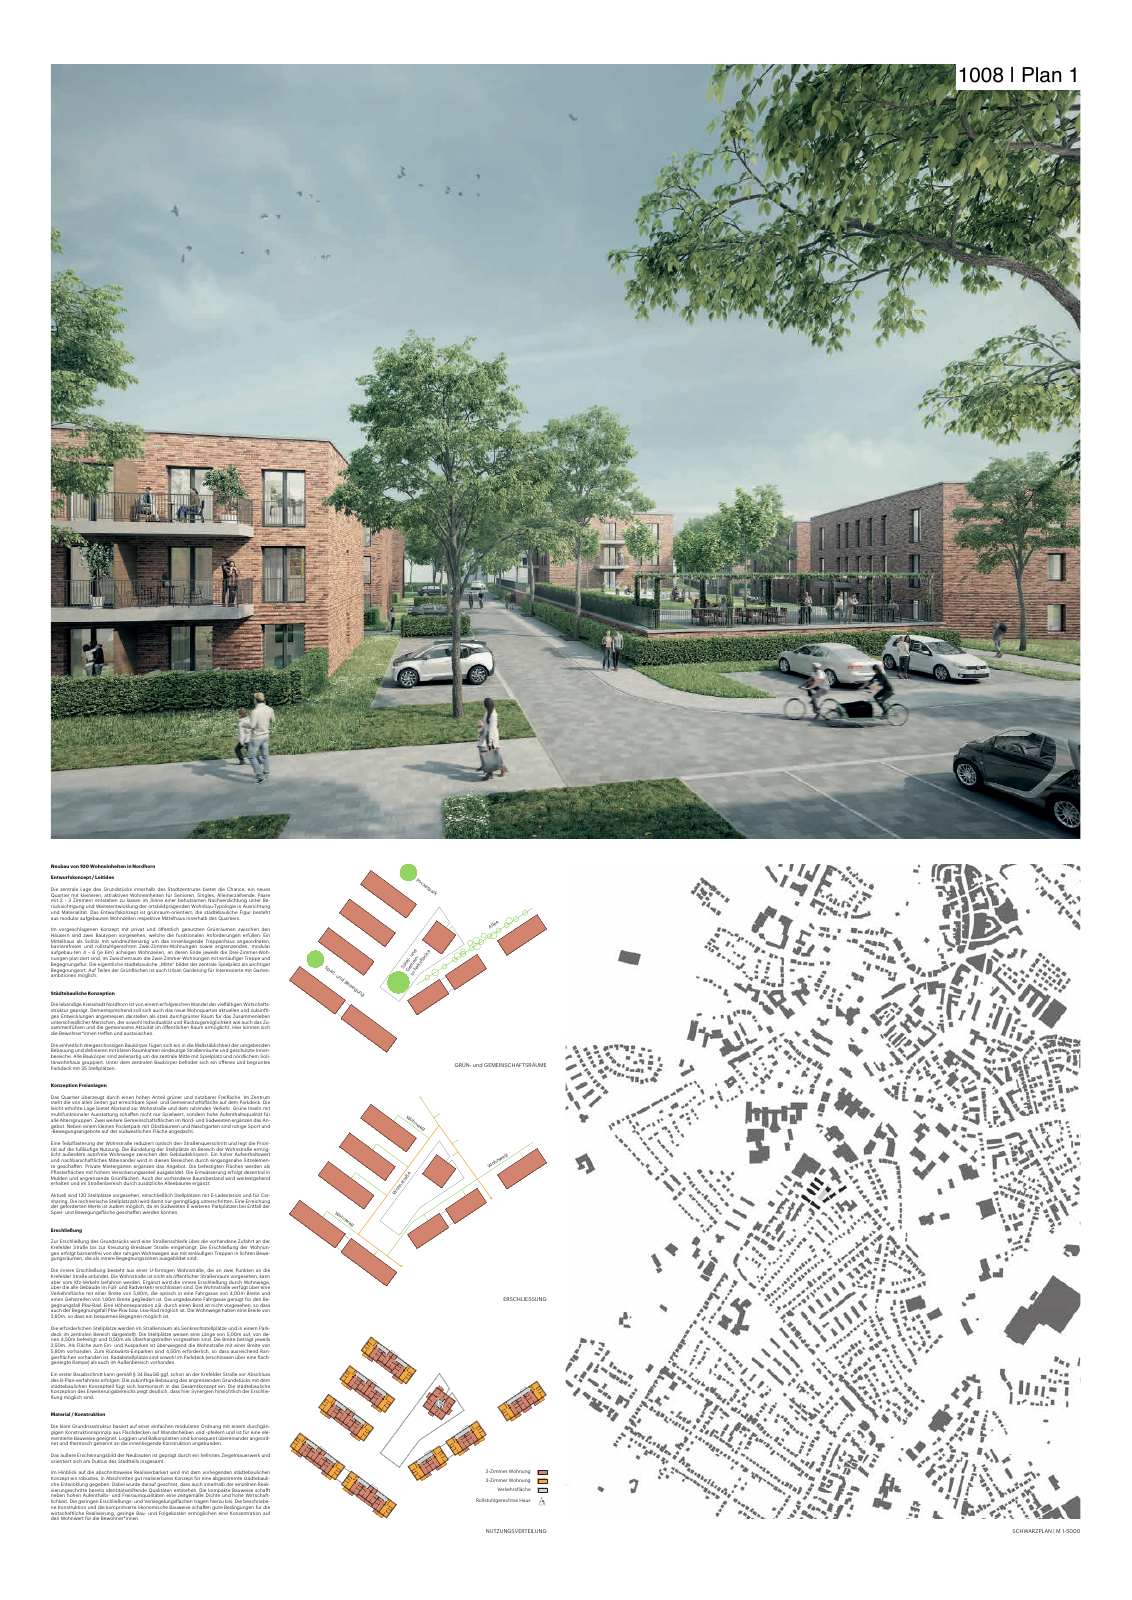 Vorschau Neubau von 100 Wohneinheiten [Nordhorn] Seite 52